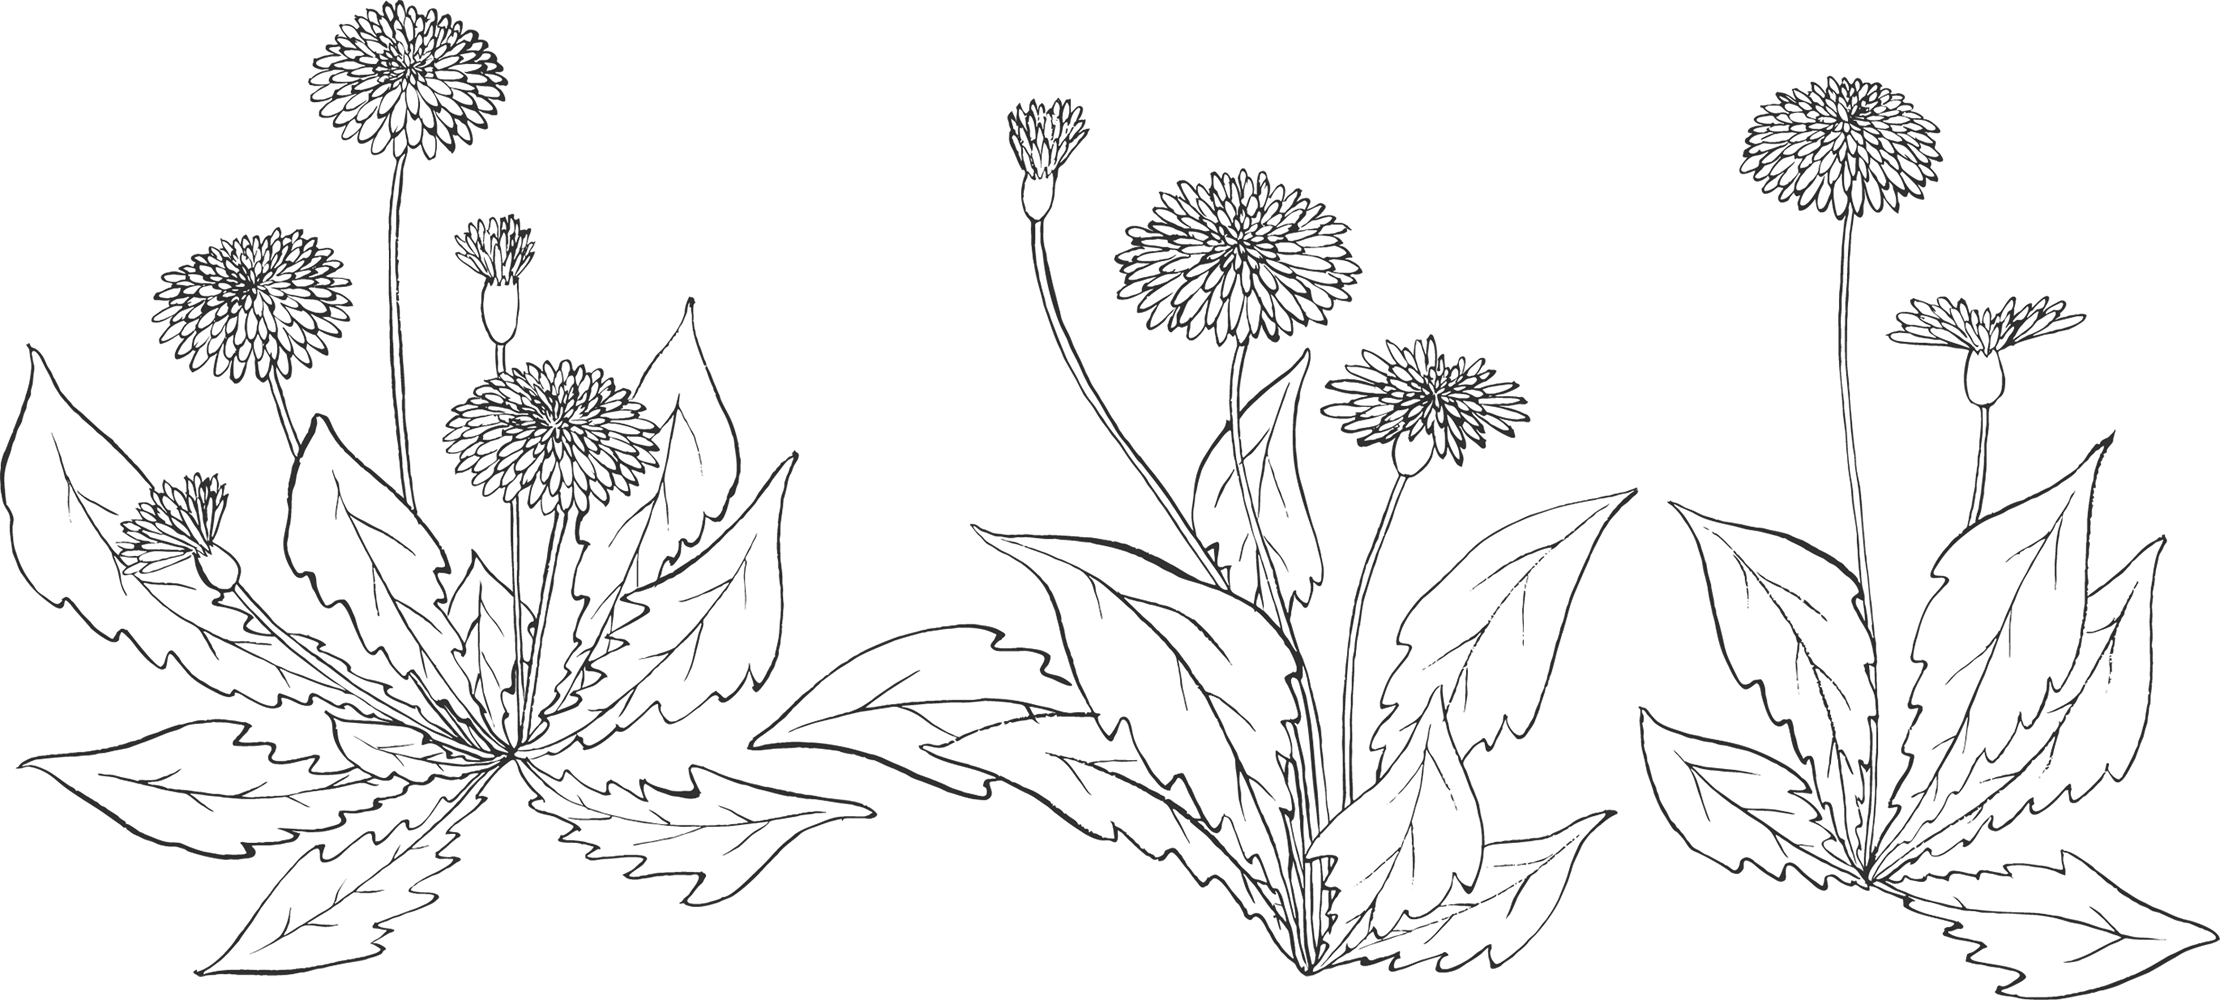 リアルな花のイラスト フリー素材 白黒 モノクロno 77 白黒 たんぽぽ